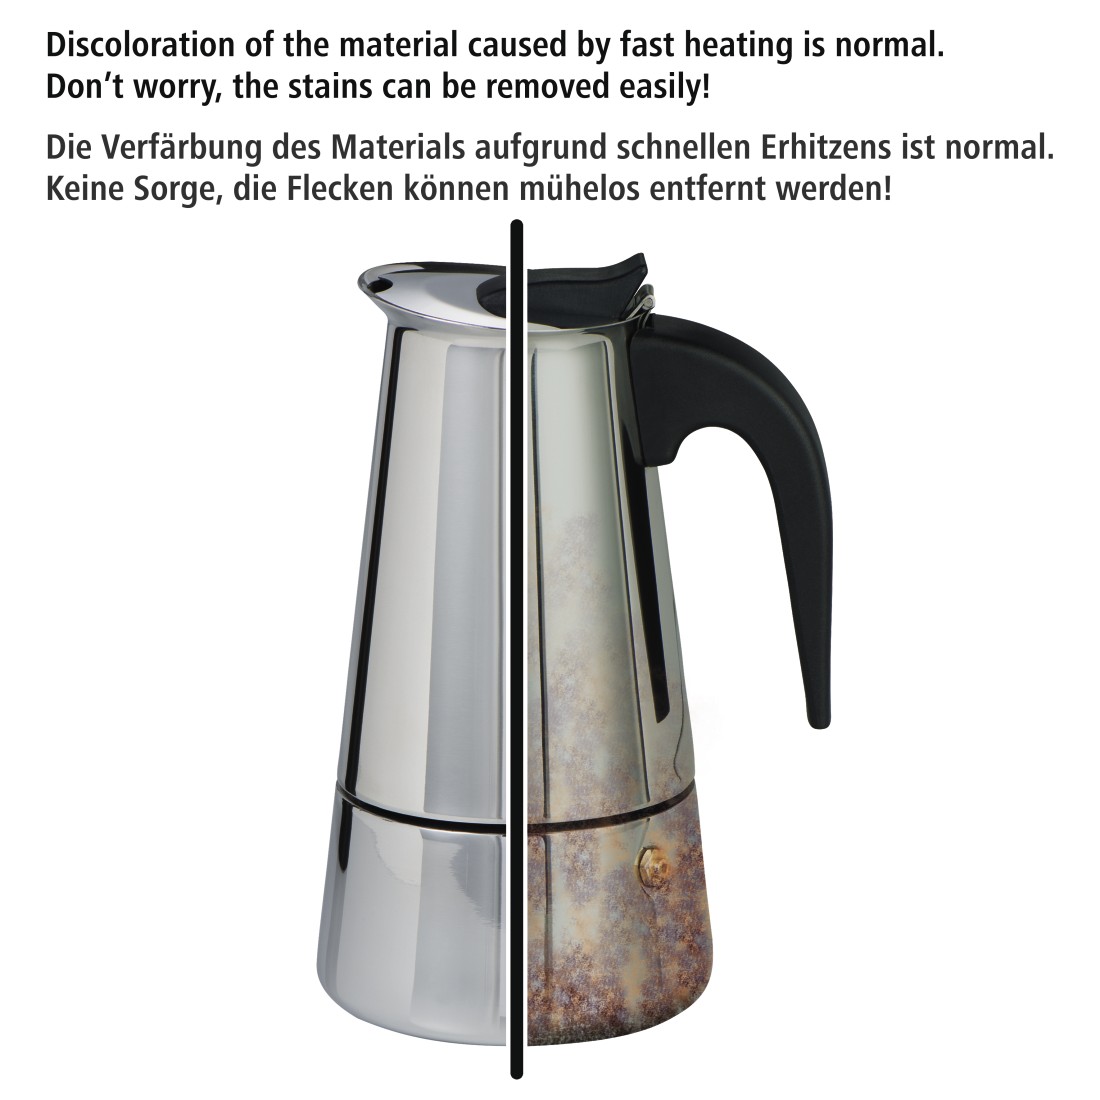 dex4 Druckfähiges Detail 4 - Xavax, Espressokocher aus Edelstahl, 250 ml, geeignet für Induktion